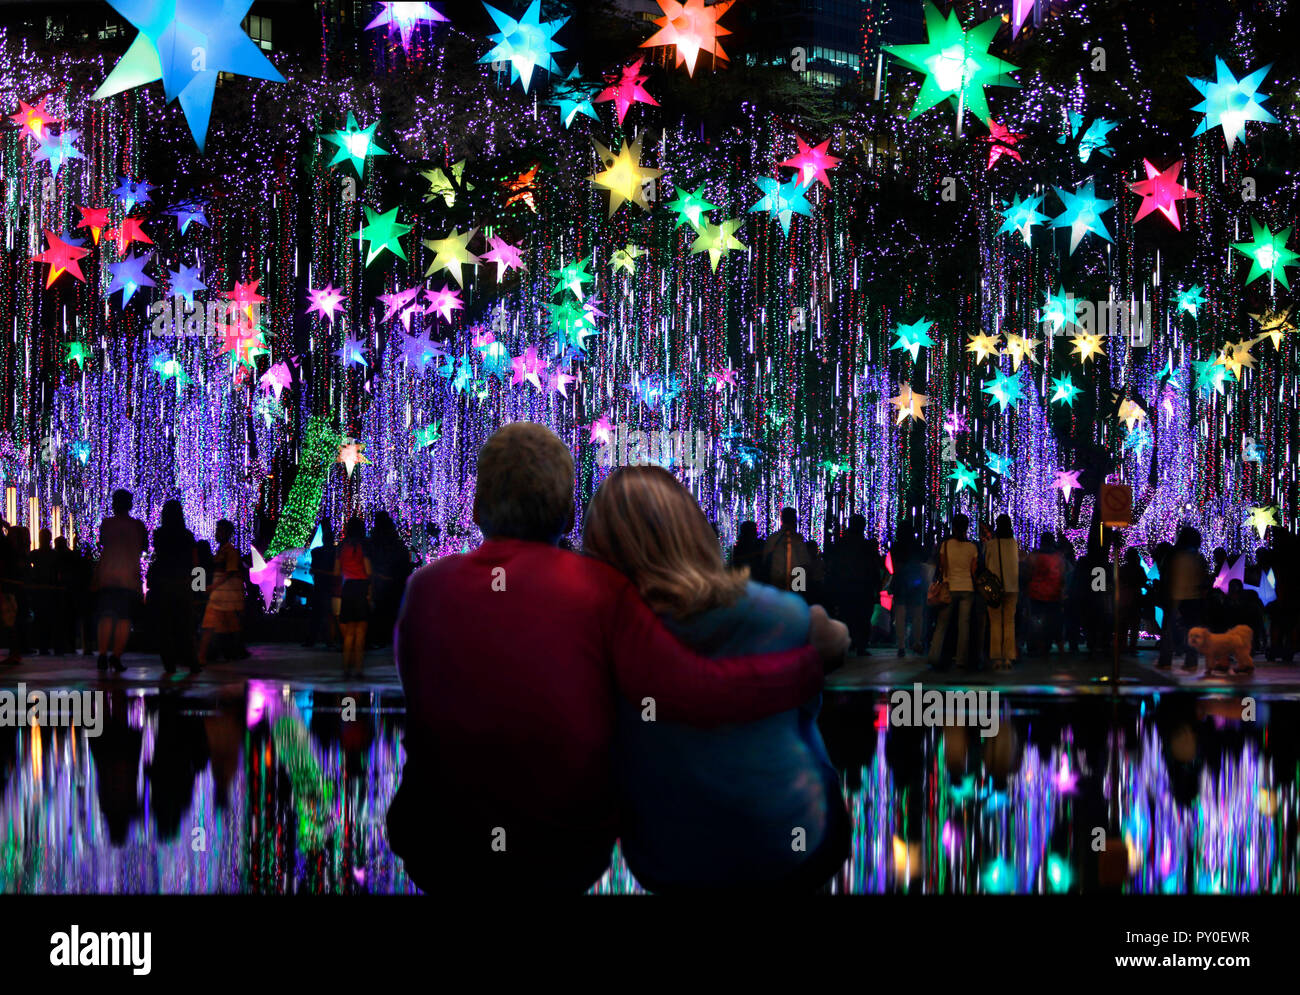 Coccolatevi con una coppia che guarda lo spettacolo di luci natalizie all'Ayala Triangle Gardens, Makati, Manila, Filippine Foto Stock